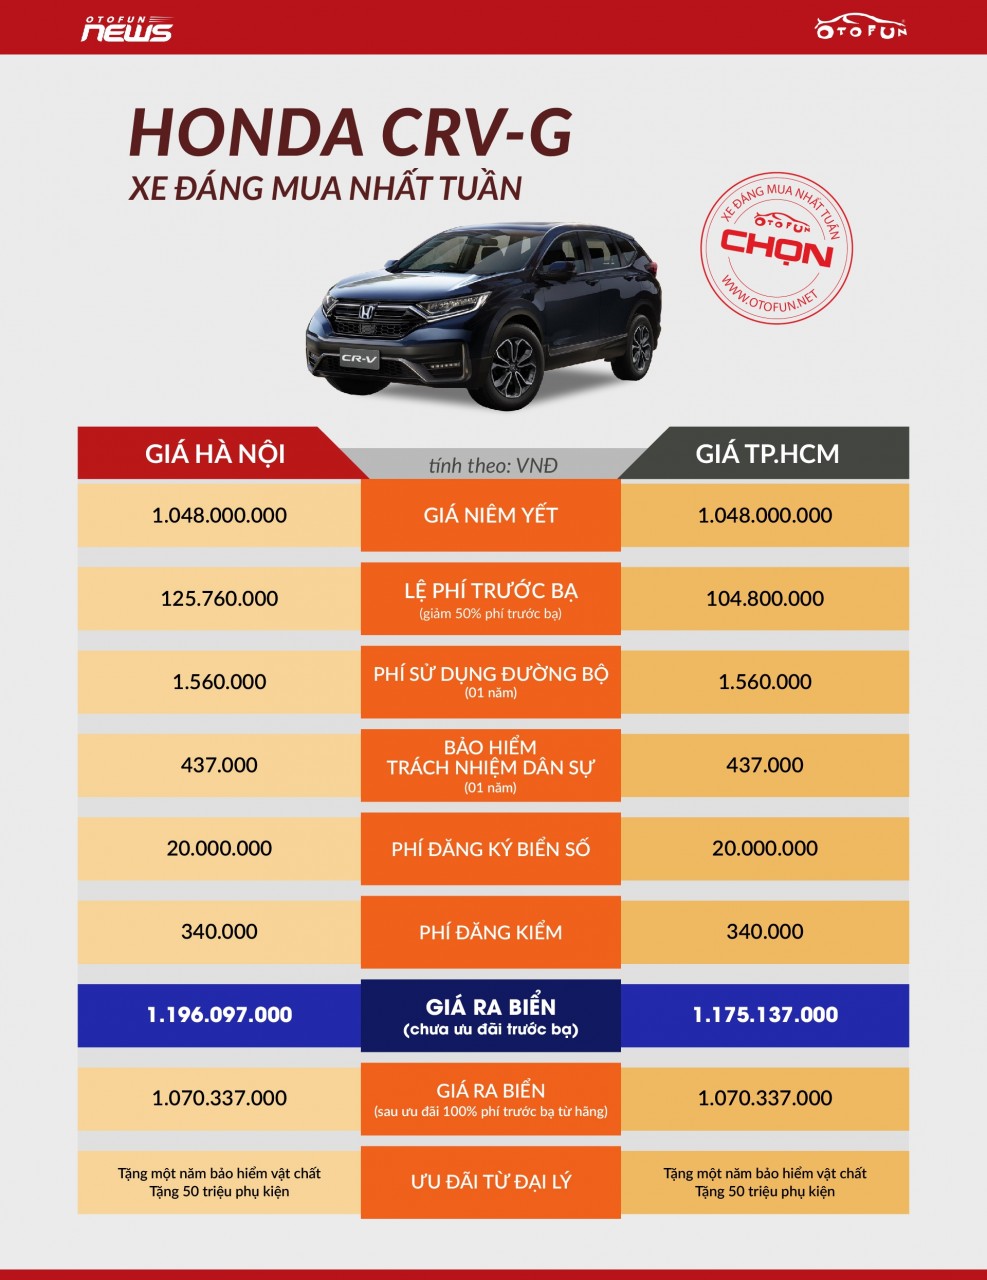 OTOFUN chọn: Honda CR-V G - Xe đáng mua nhất tuần